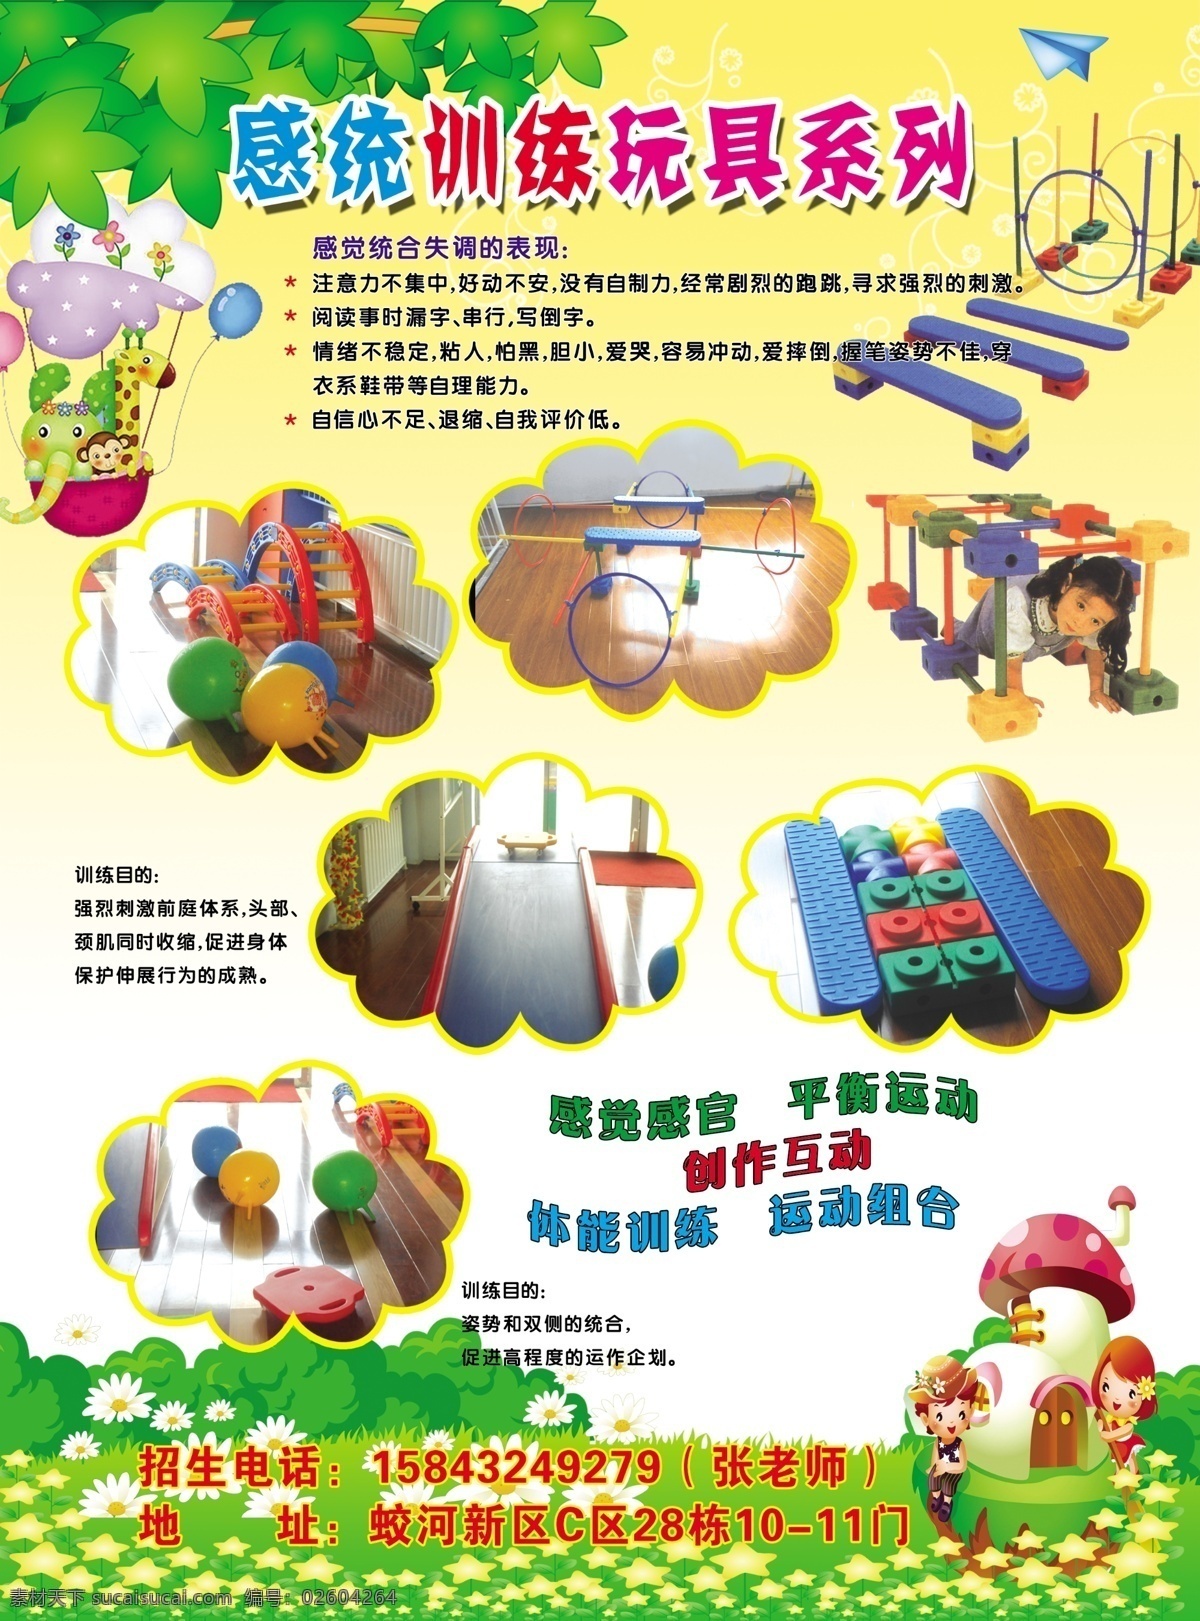 幼儿园 招生简章 招生 宣传 感统玩具系列 招生卡通 教学特色 广告设计模板 源文件